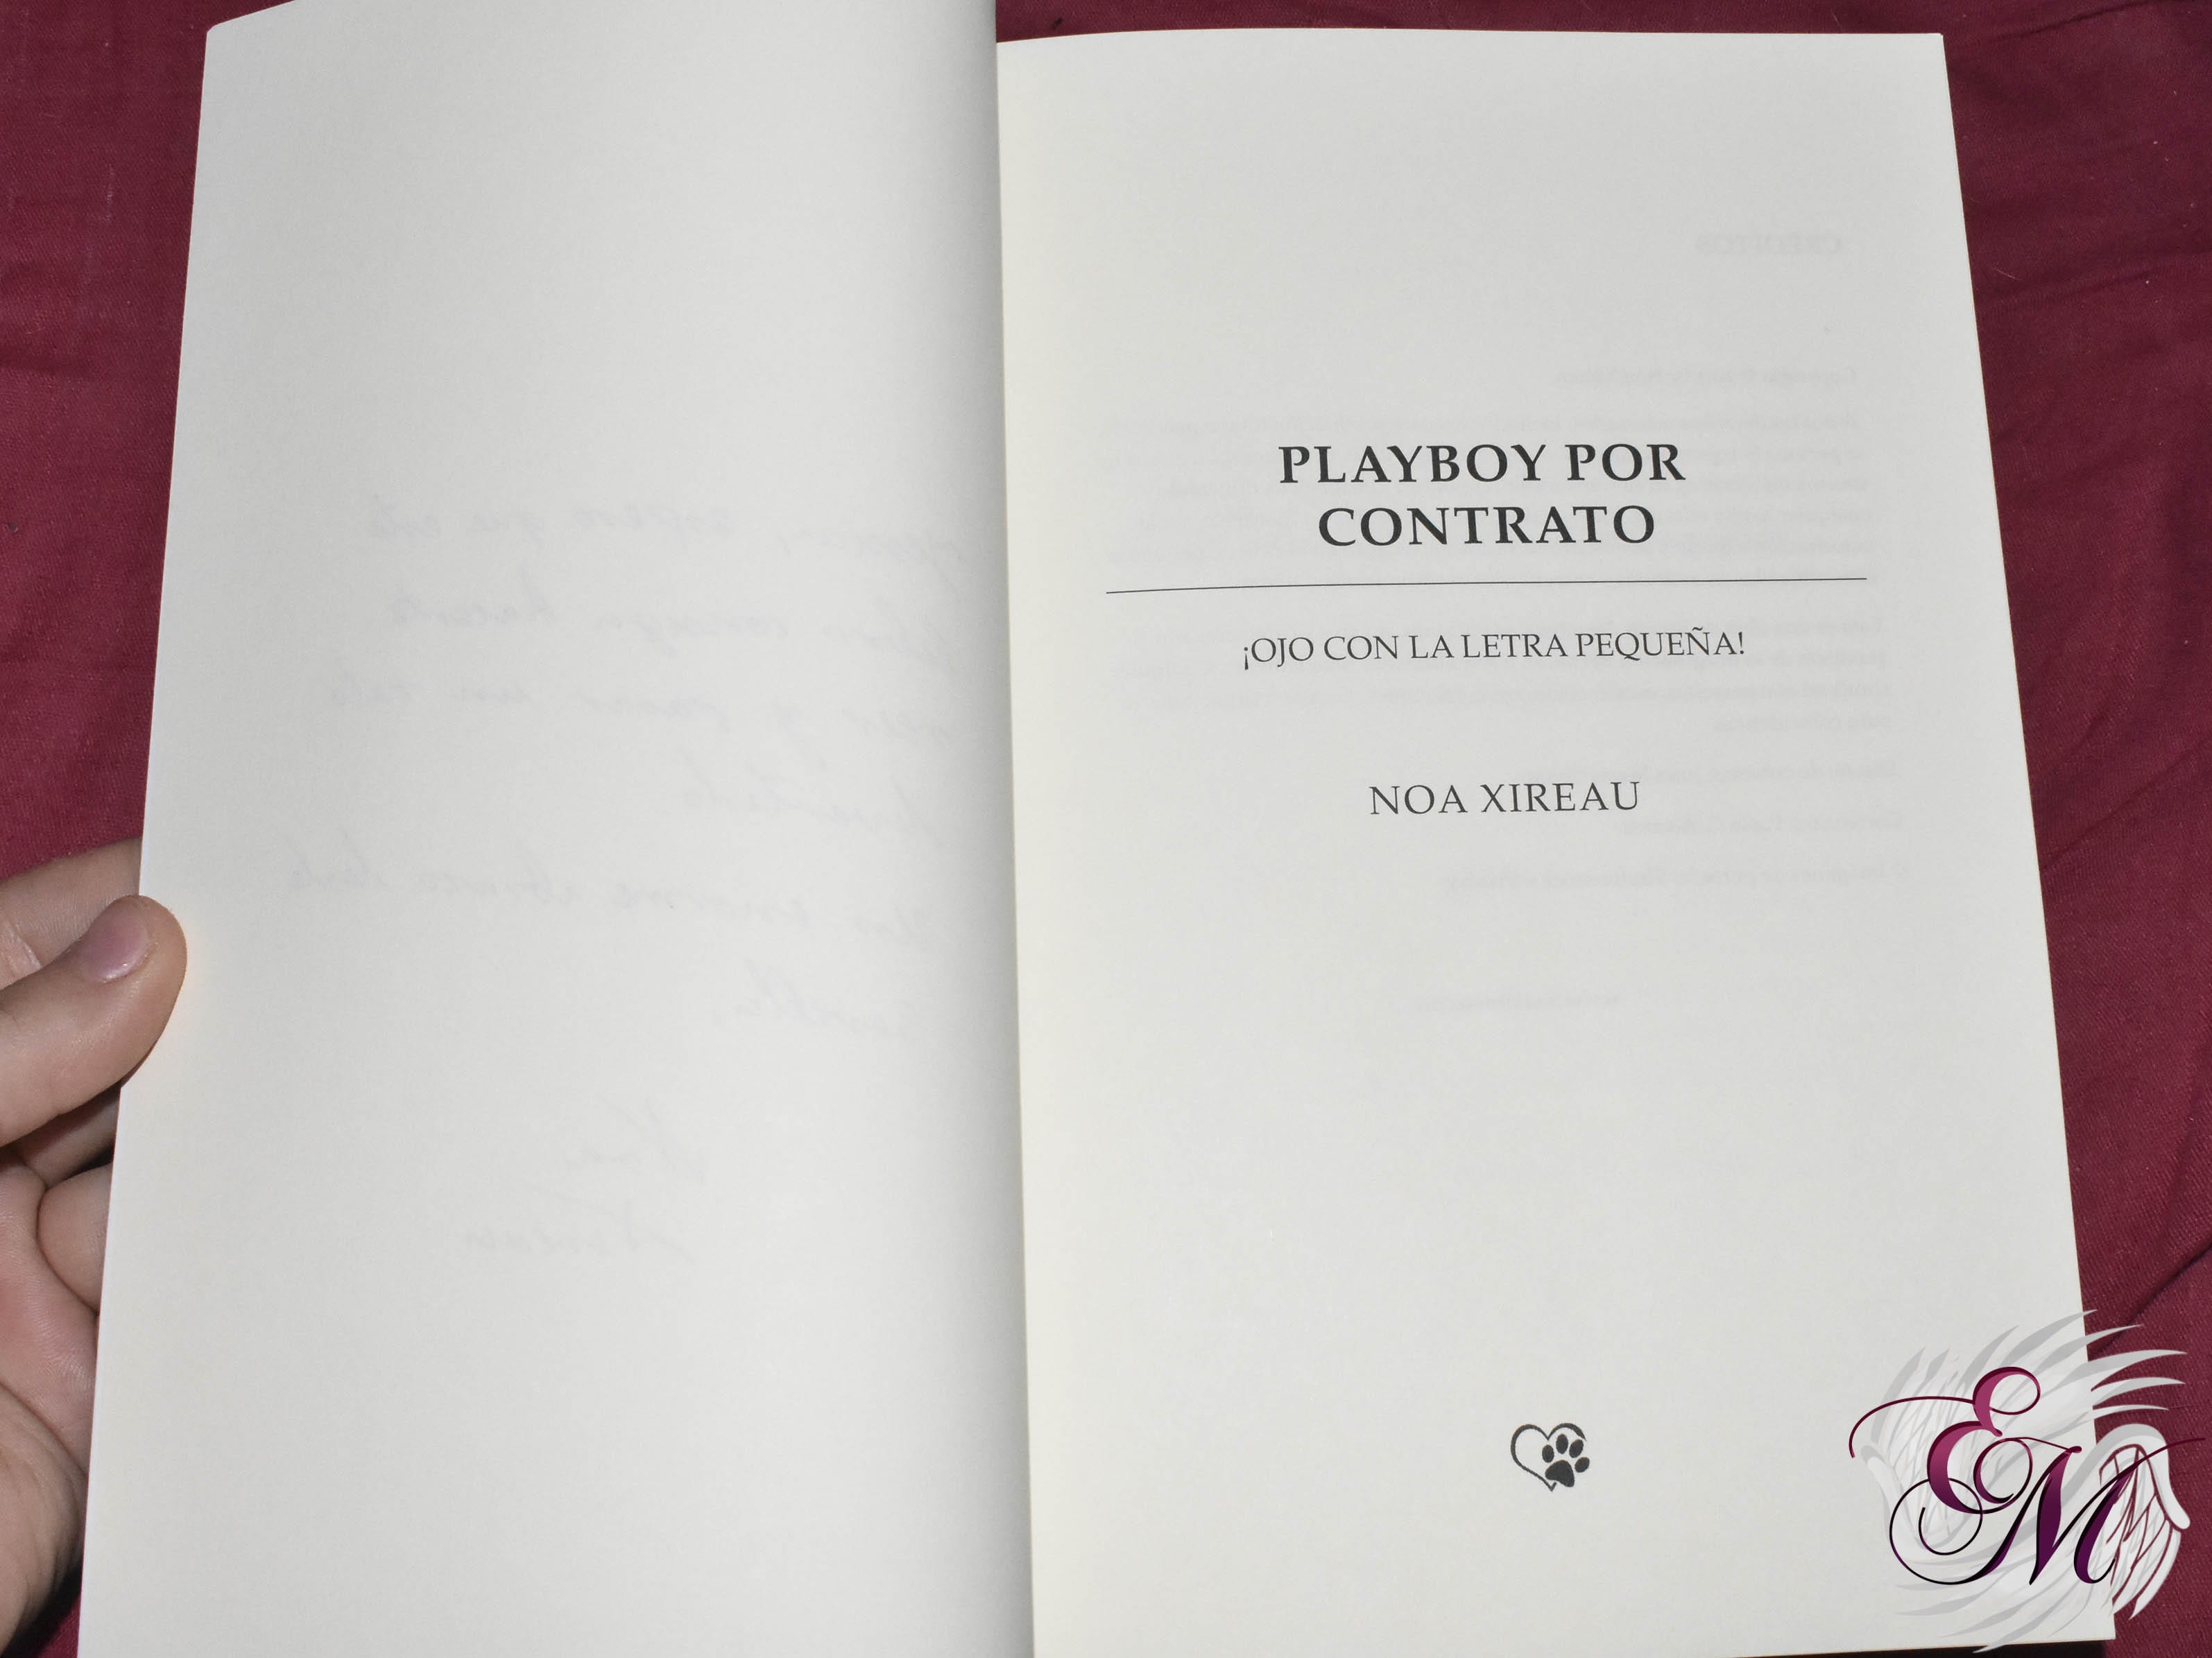 Playboy x contrato, de Noa Xireau - Reseña